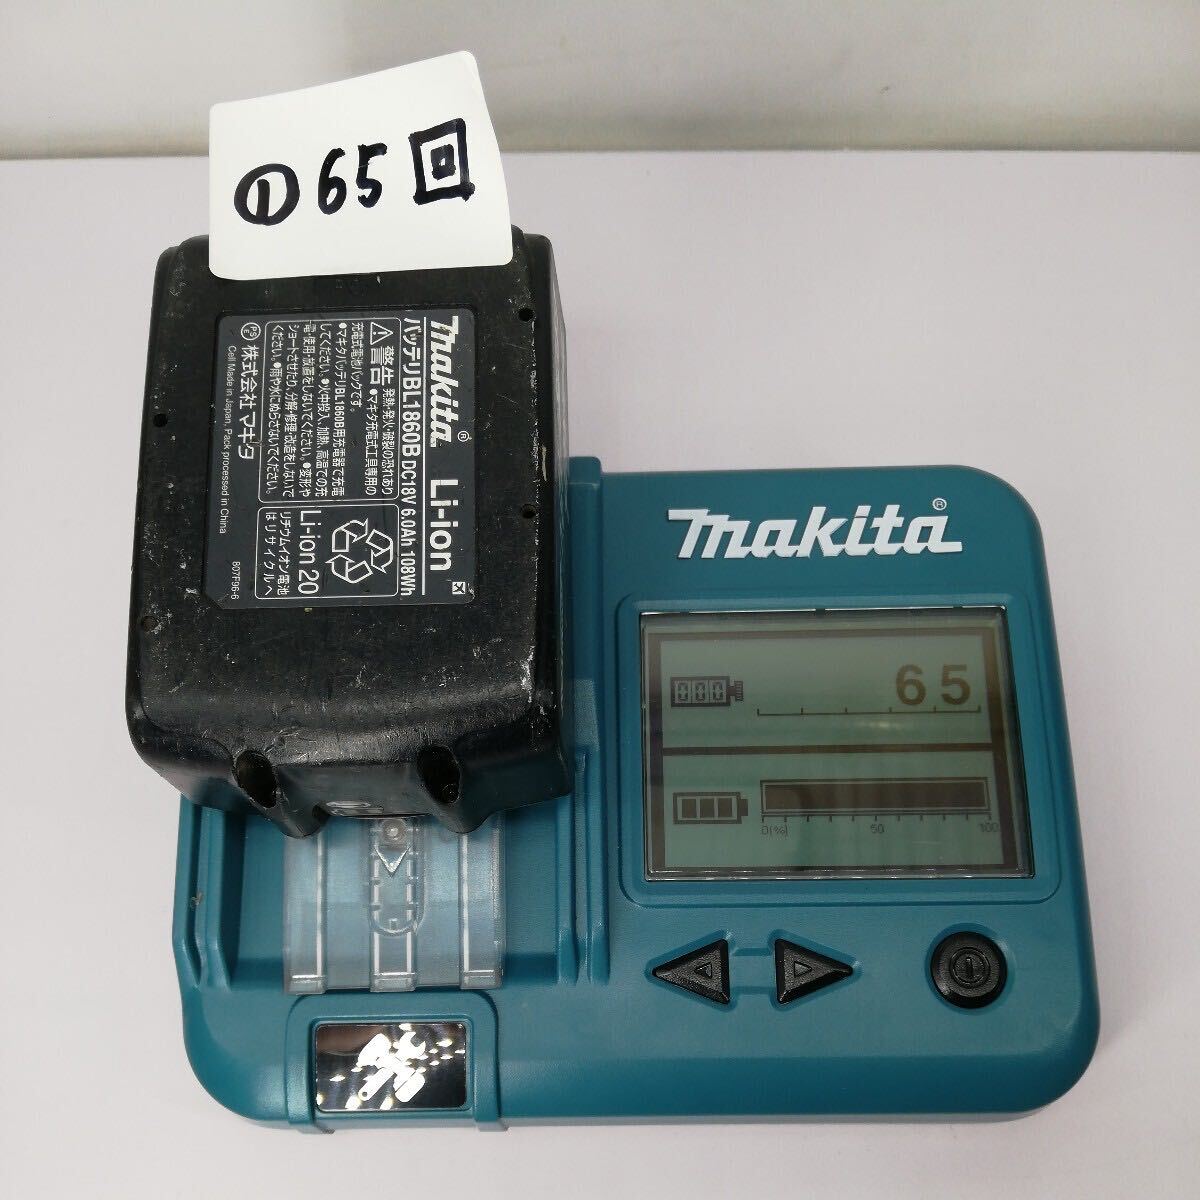 サ)[動作確認済] makita マキタ 充電式インパクトドライバ TD171DRGX B ブラック 18V 6.0Ah バッテリ2個 充電器 ケース付 電動工具 管理Y